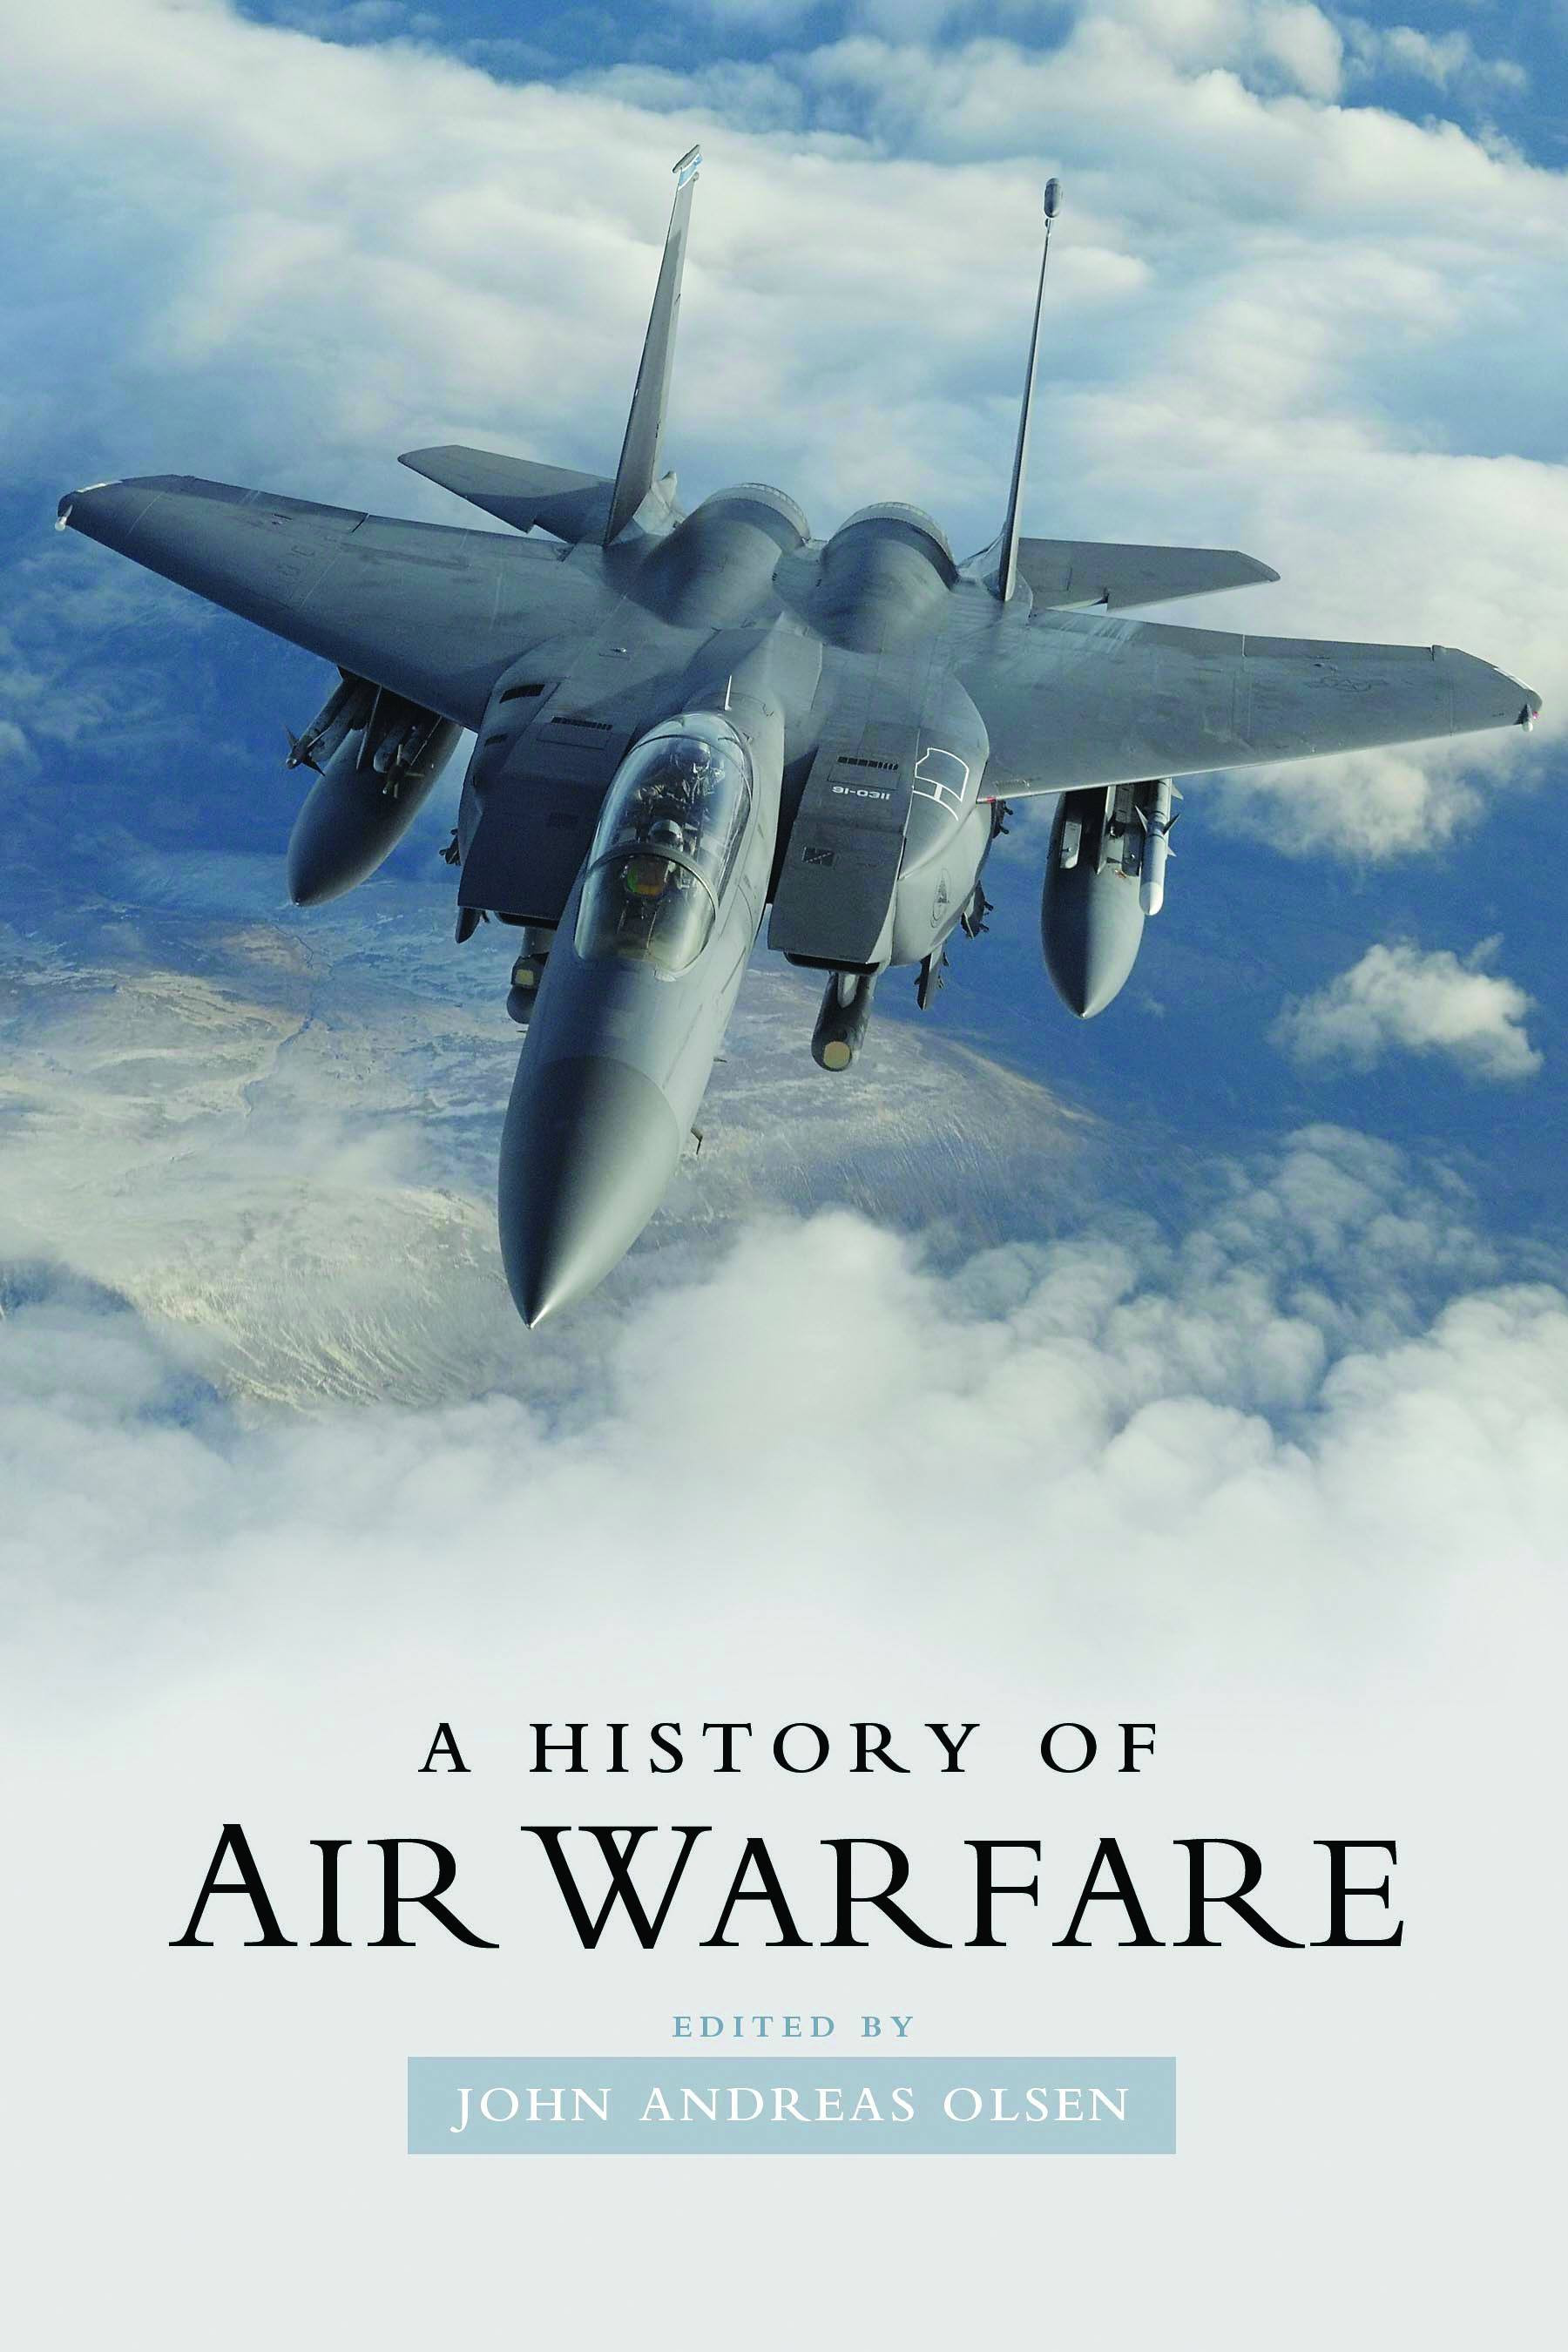 A History of Air Warfare - 25-49.99